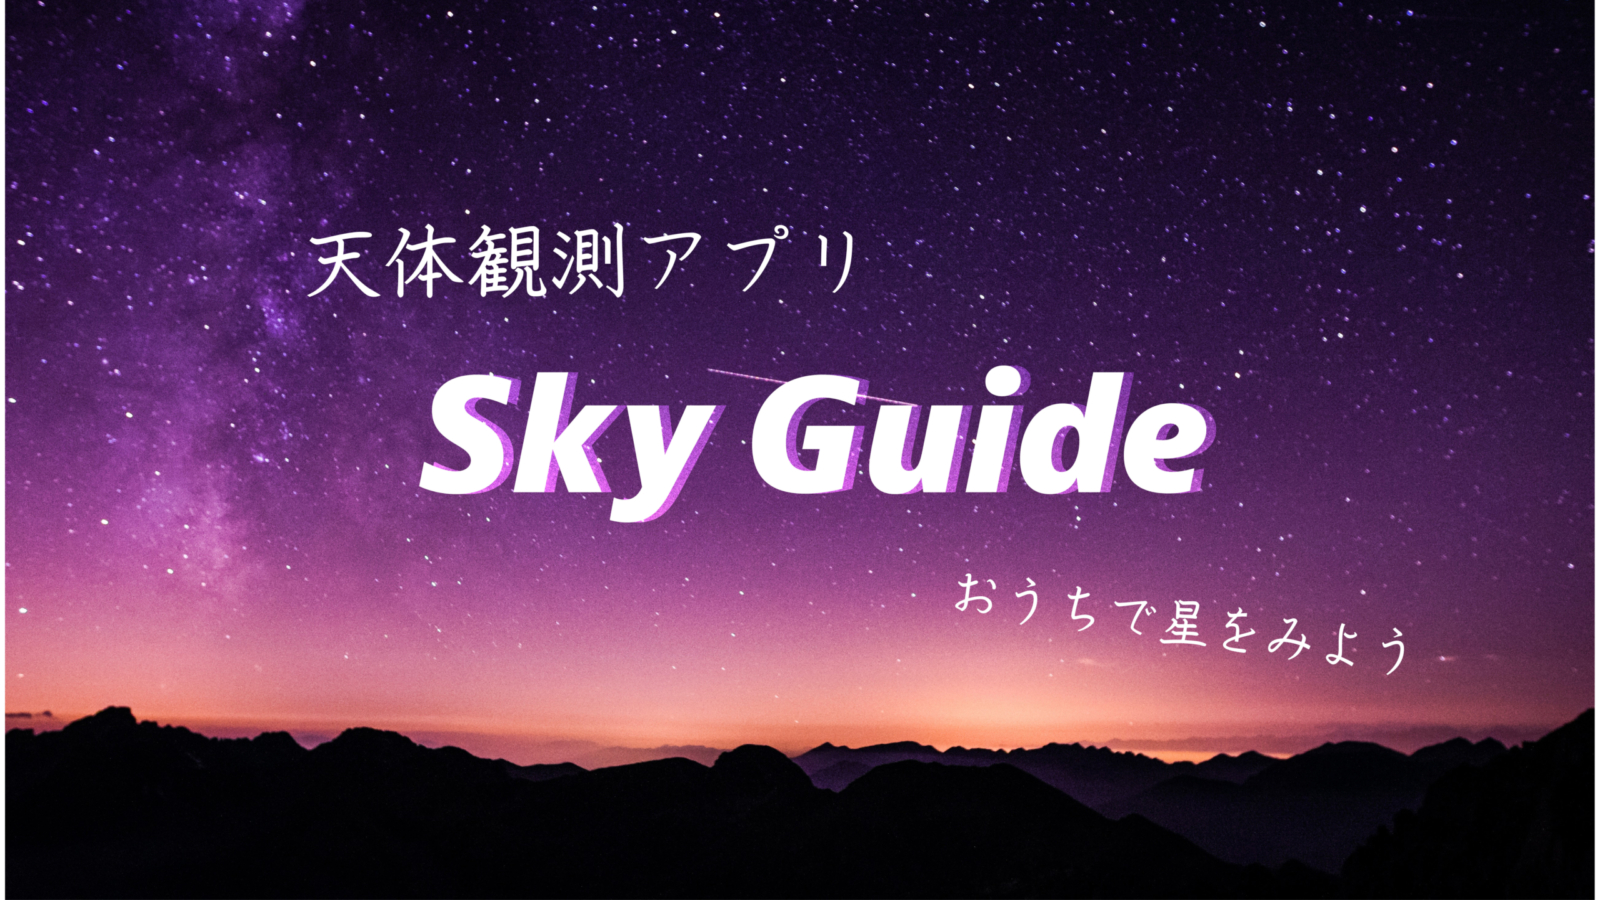 おうちで気軽に天体観測 アプリ Sky Guide で星をみよう